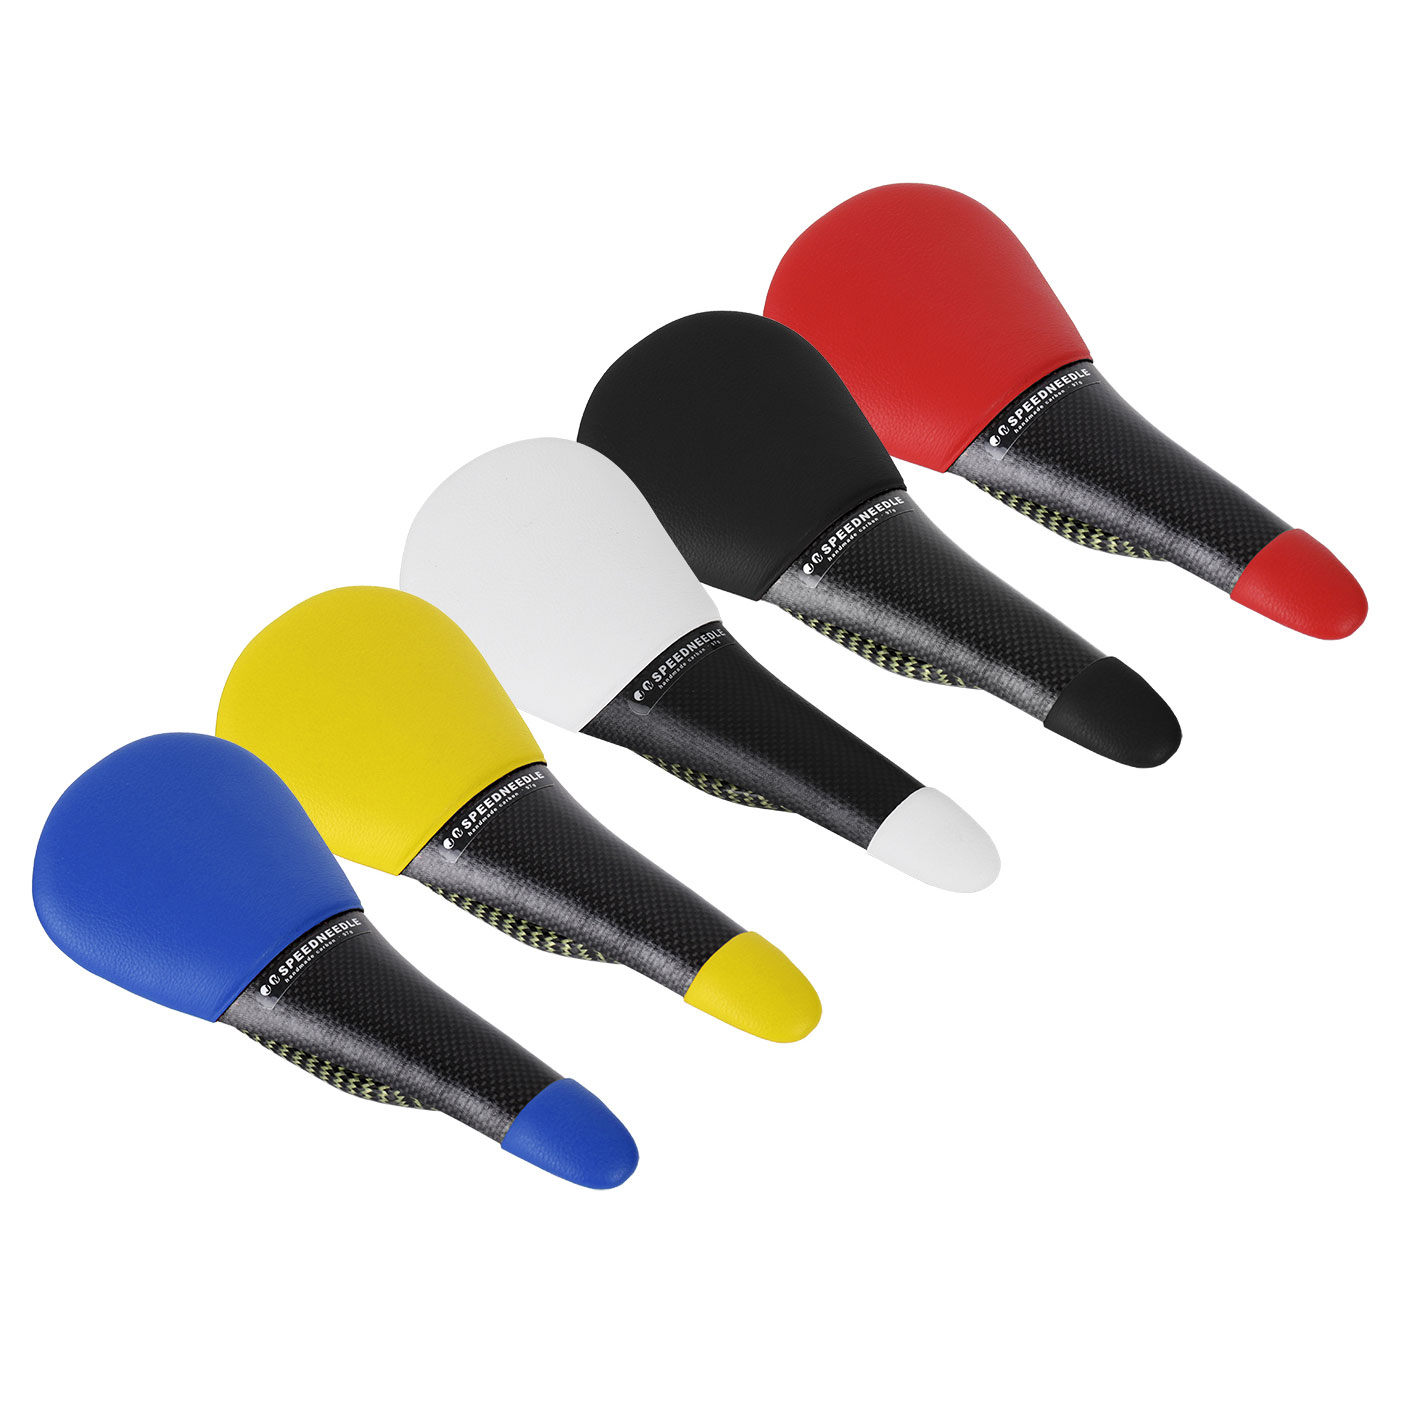 Productfoto van Tune Speedneedle Leer Carbon Zadel - verschillende kleuren